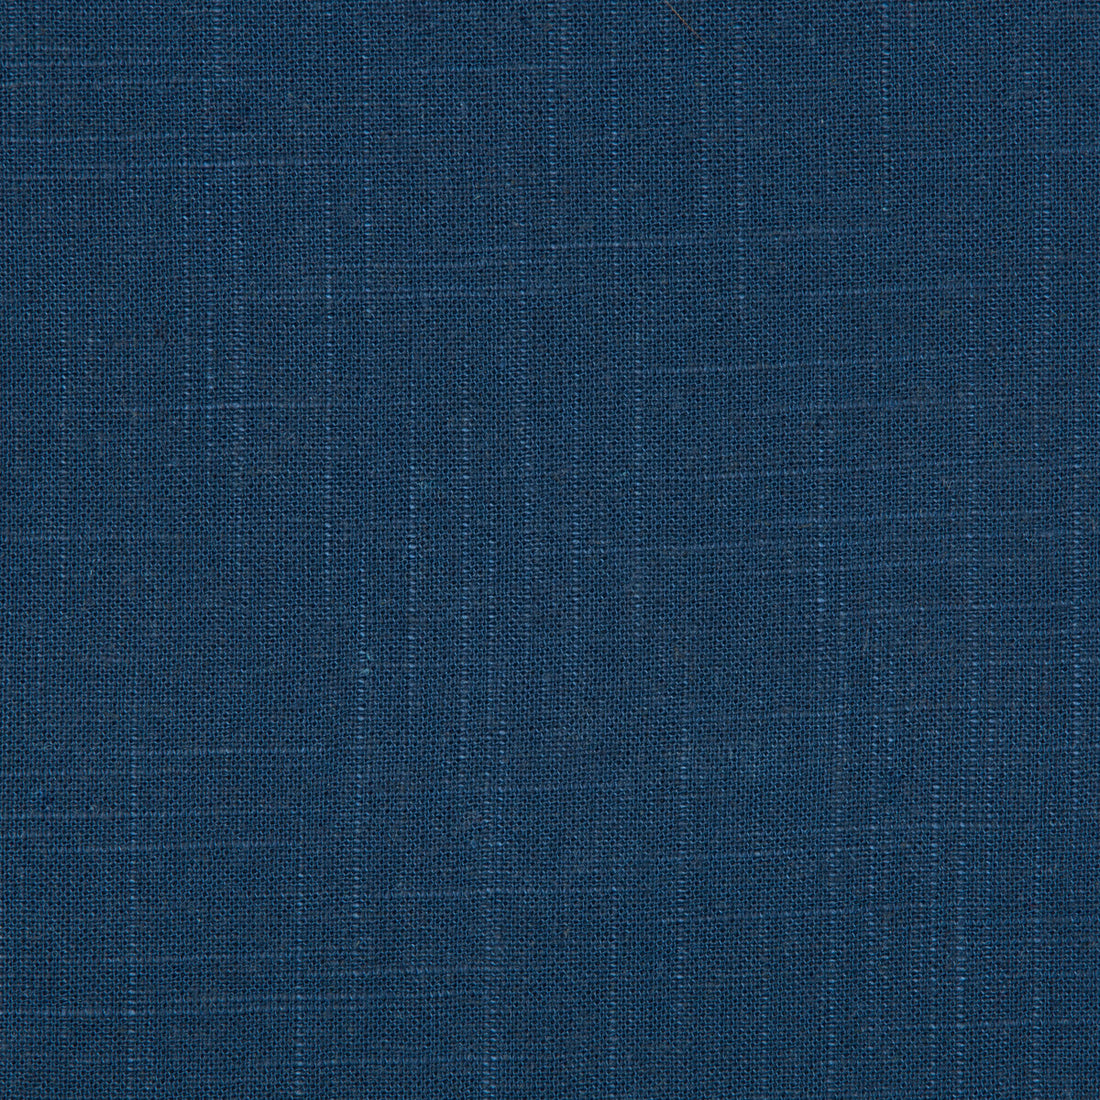 Kravet Basics fabric in 30808-50 color - pattern 30808.50.0 - by Kravet Basics